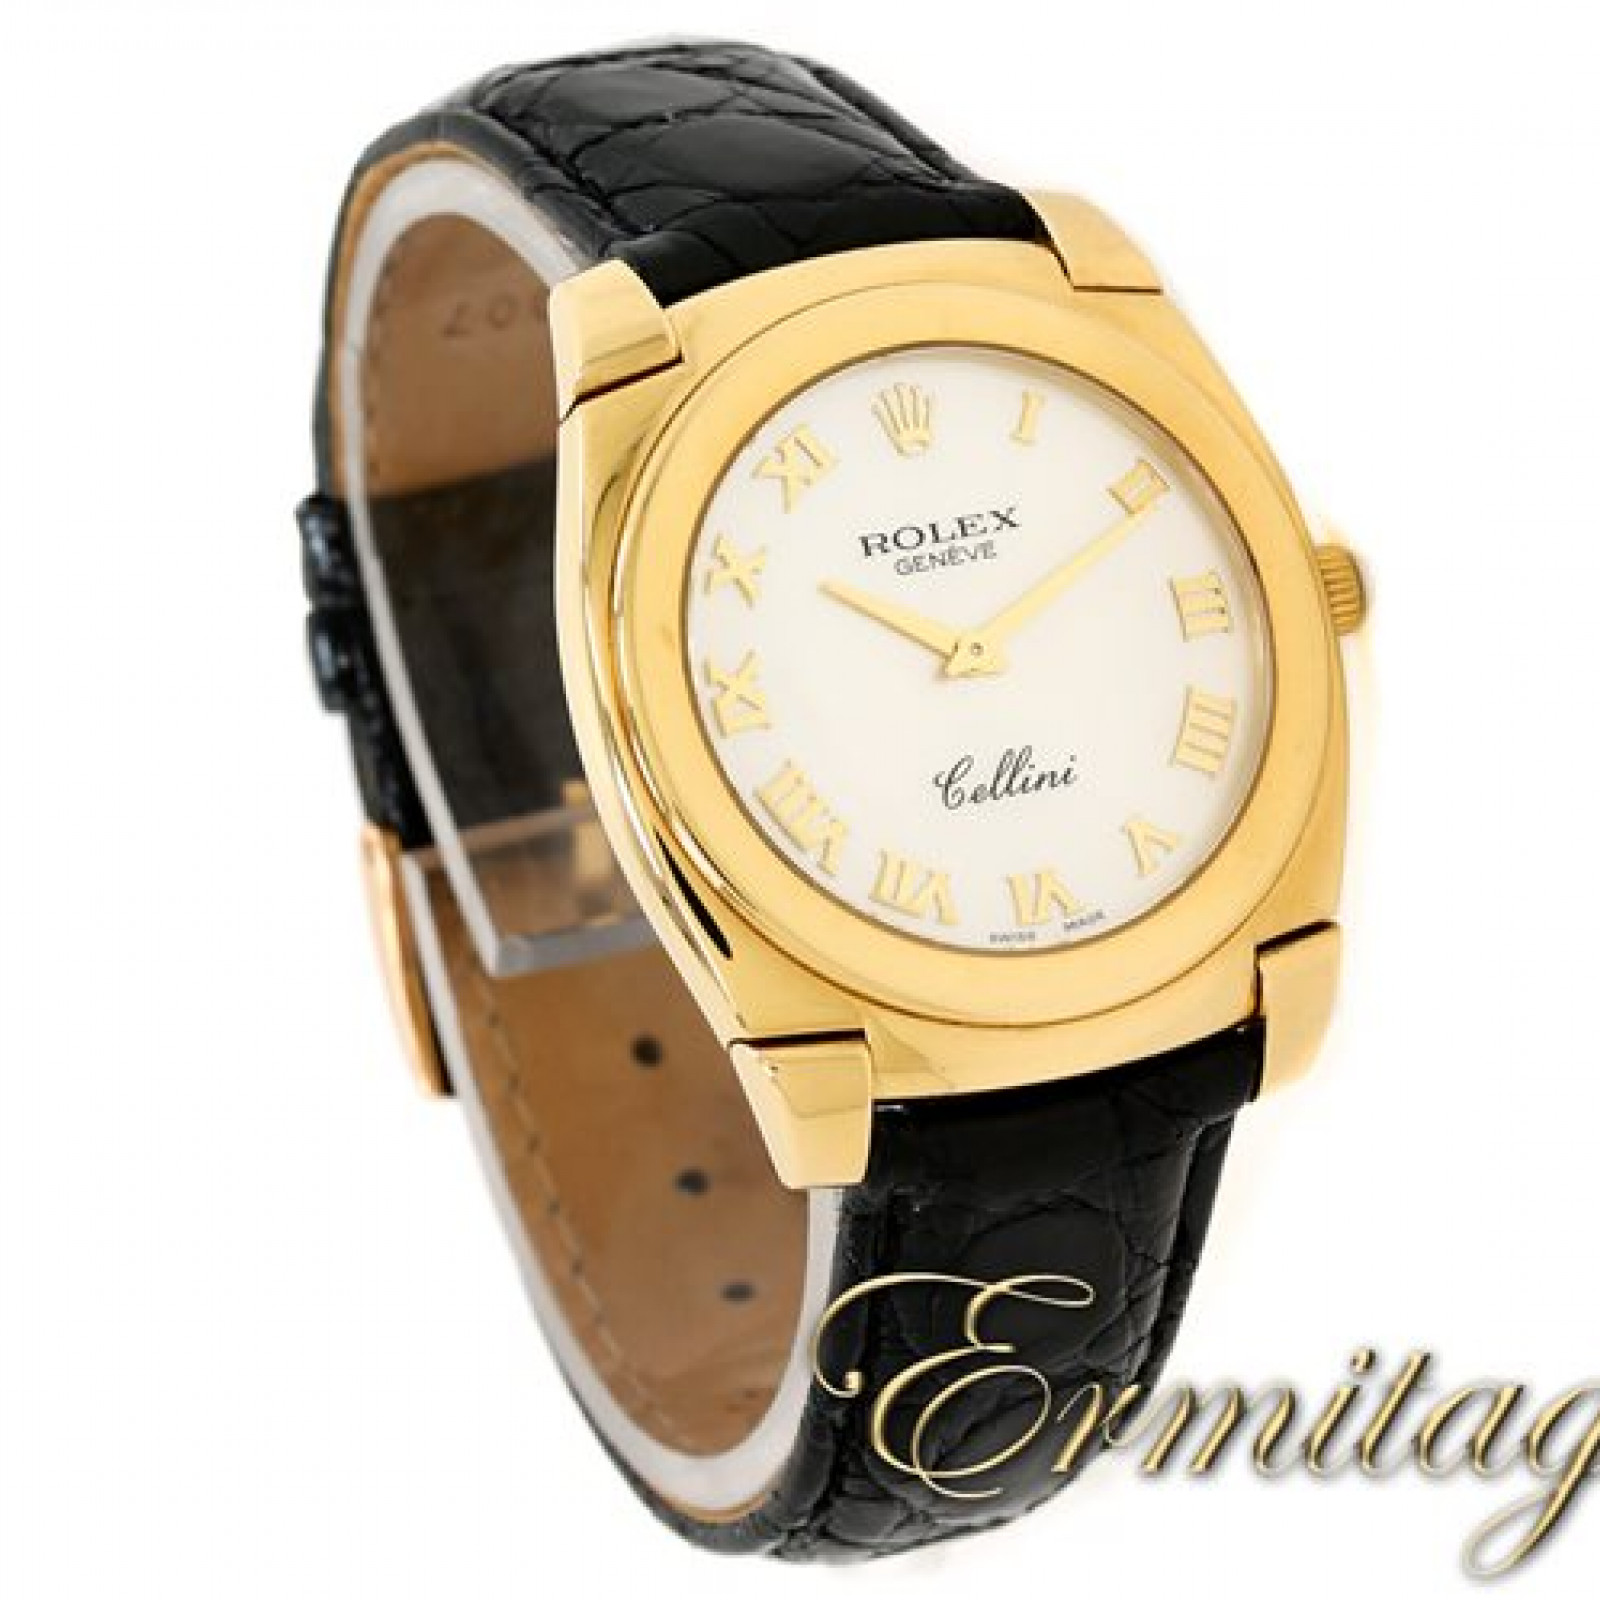 Rolex Cellini Cestello 5330 Gold